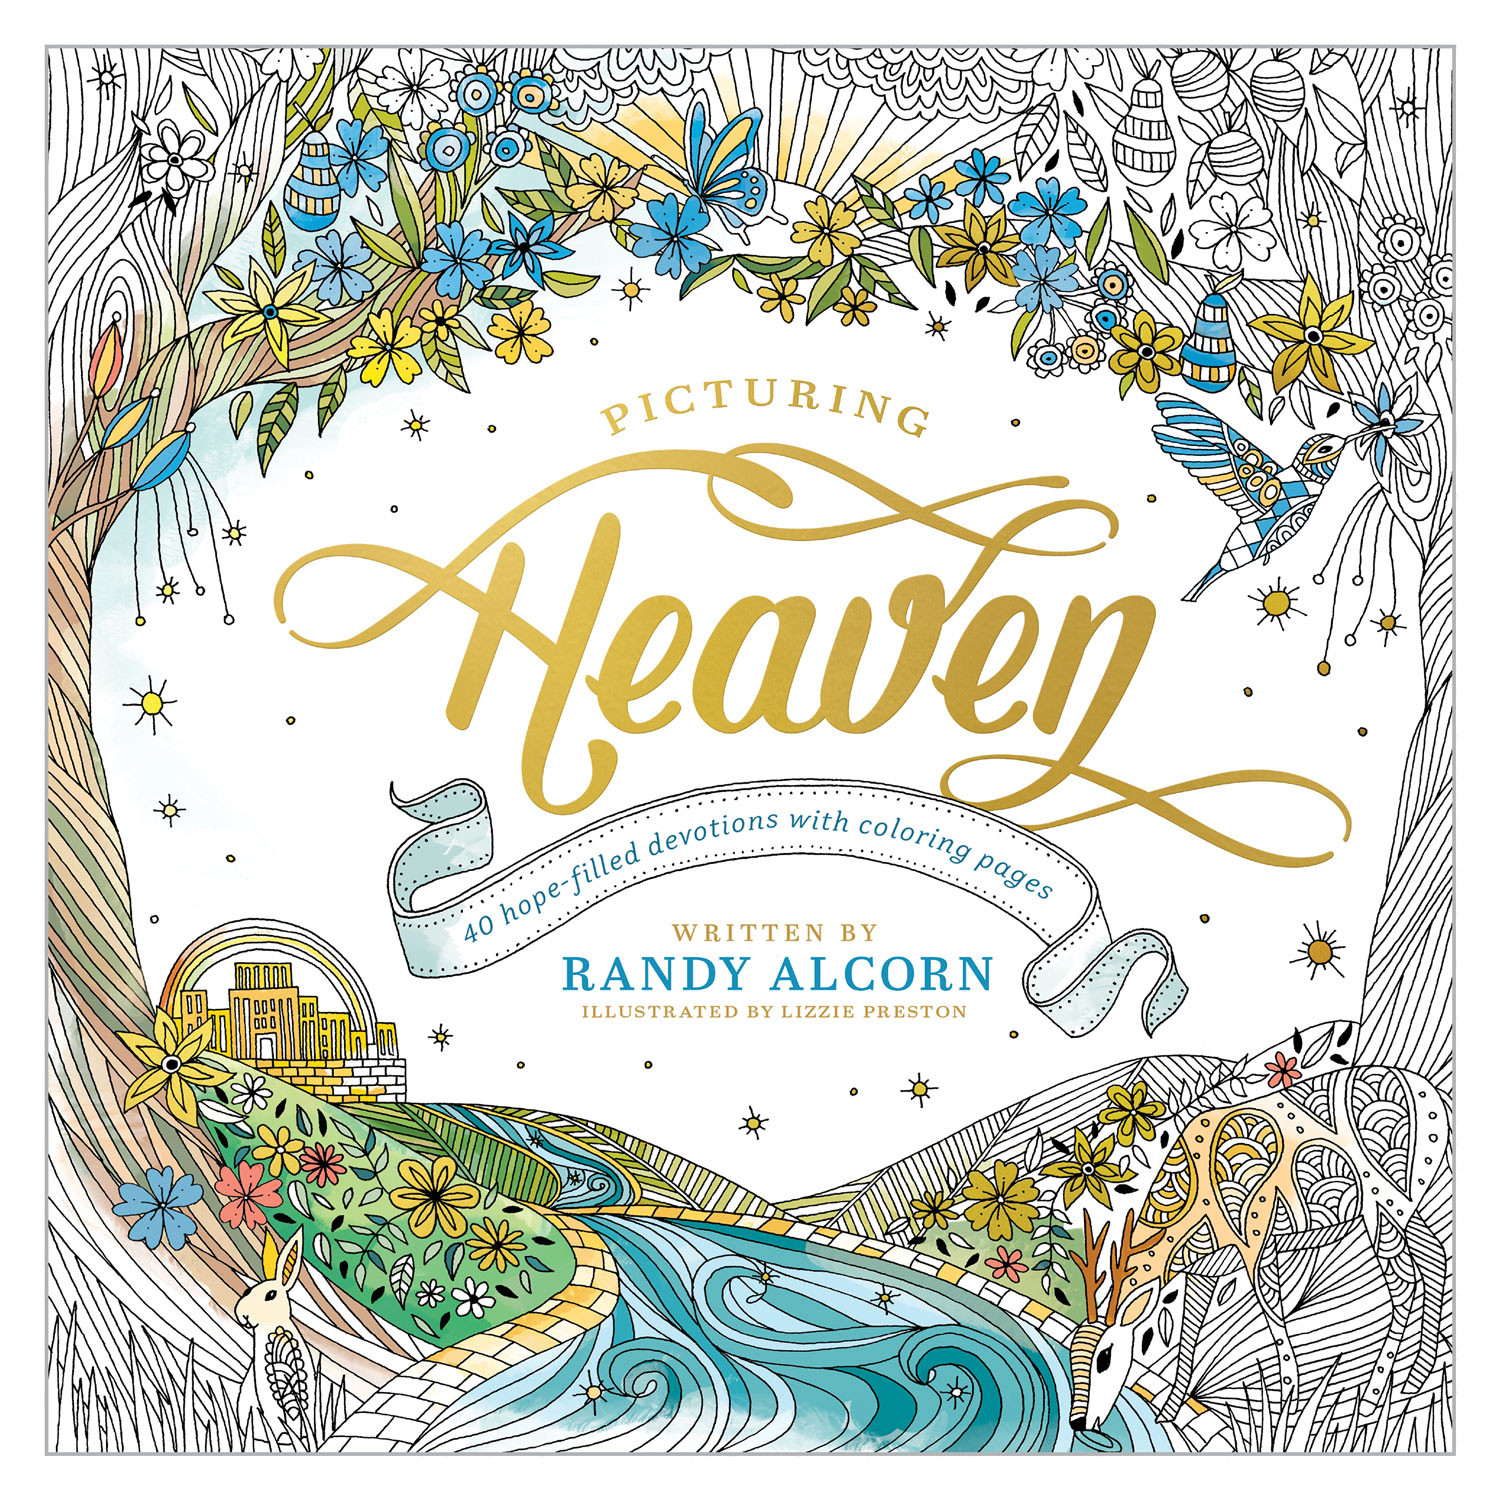 heaven member book randy alcorn